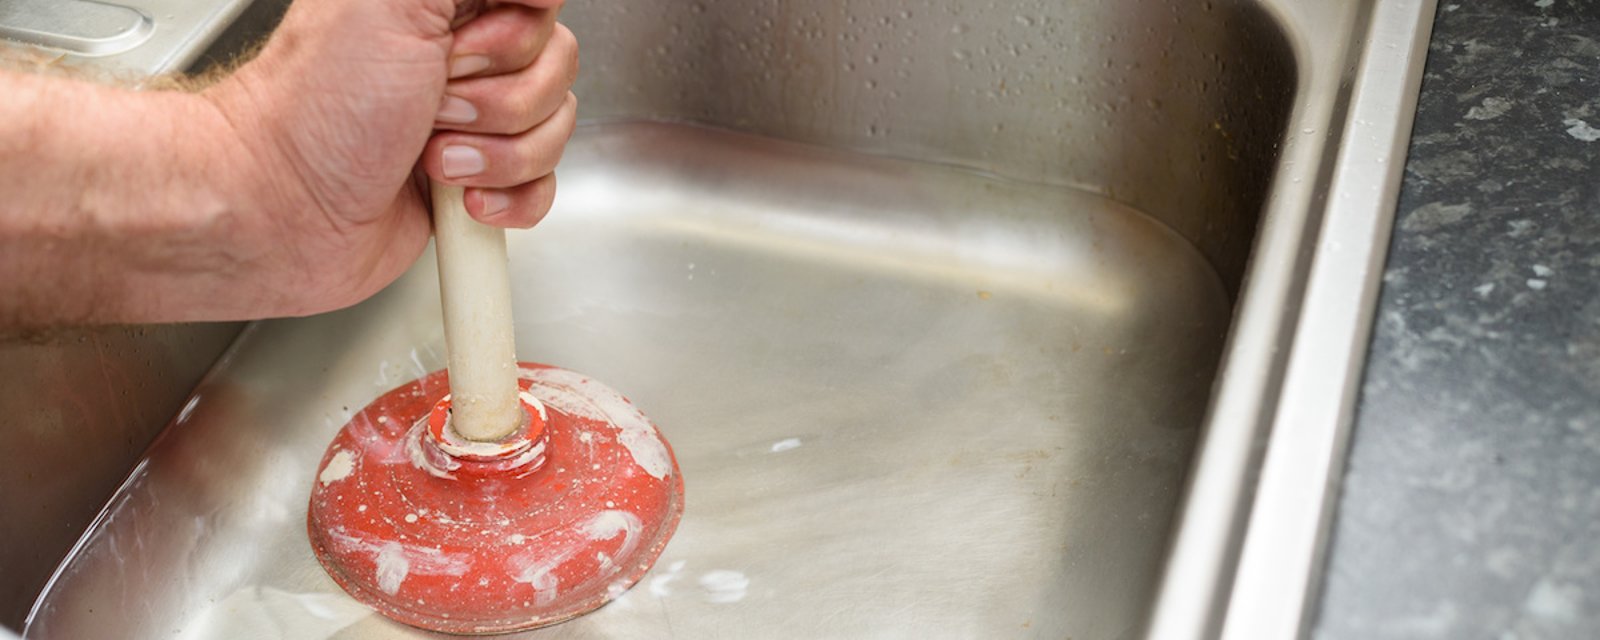 7 façons de débloquer un évier sans faire appel à des produits nocifs 